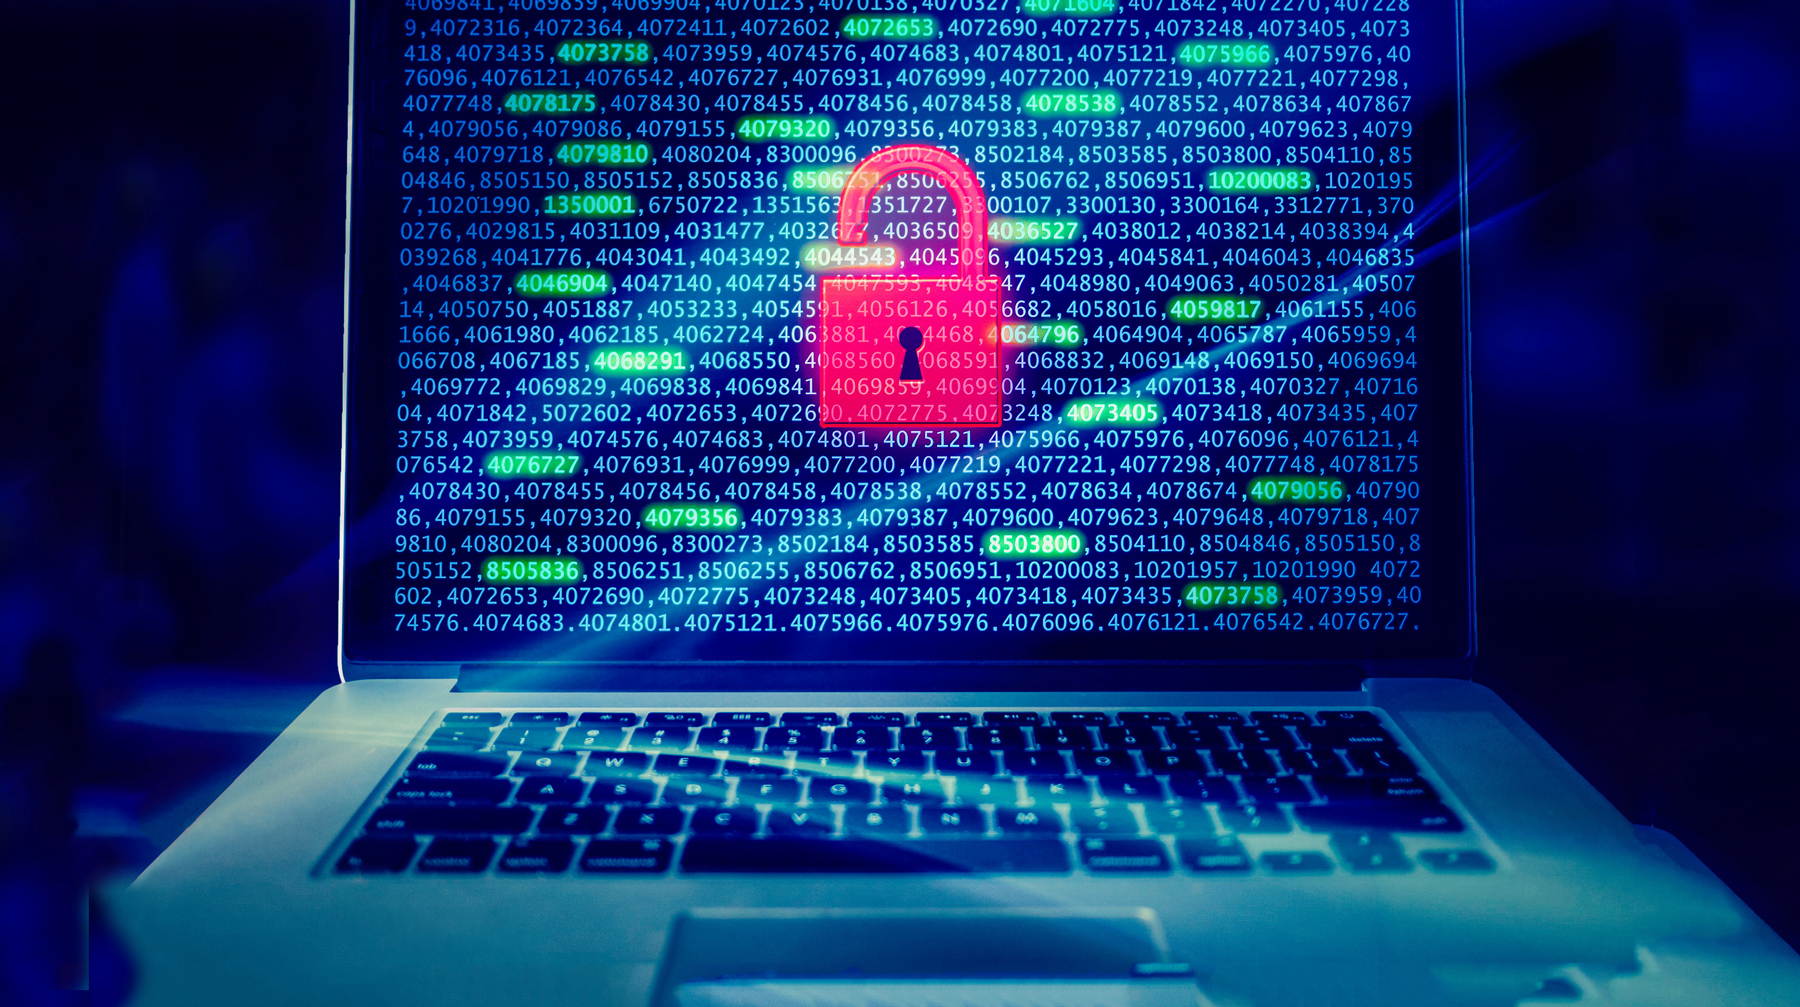 В области кибербезопасности со спецслужбой взаимодействуют Росатом, Минэкономразвития, Минтранс и другие органы Фото: © GLOBAL LOOK press